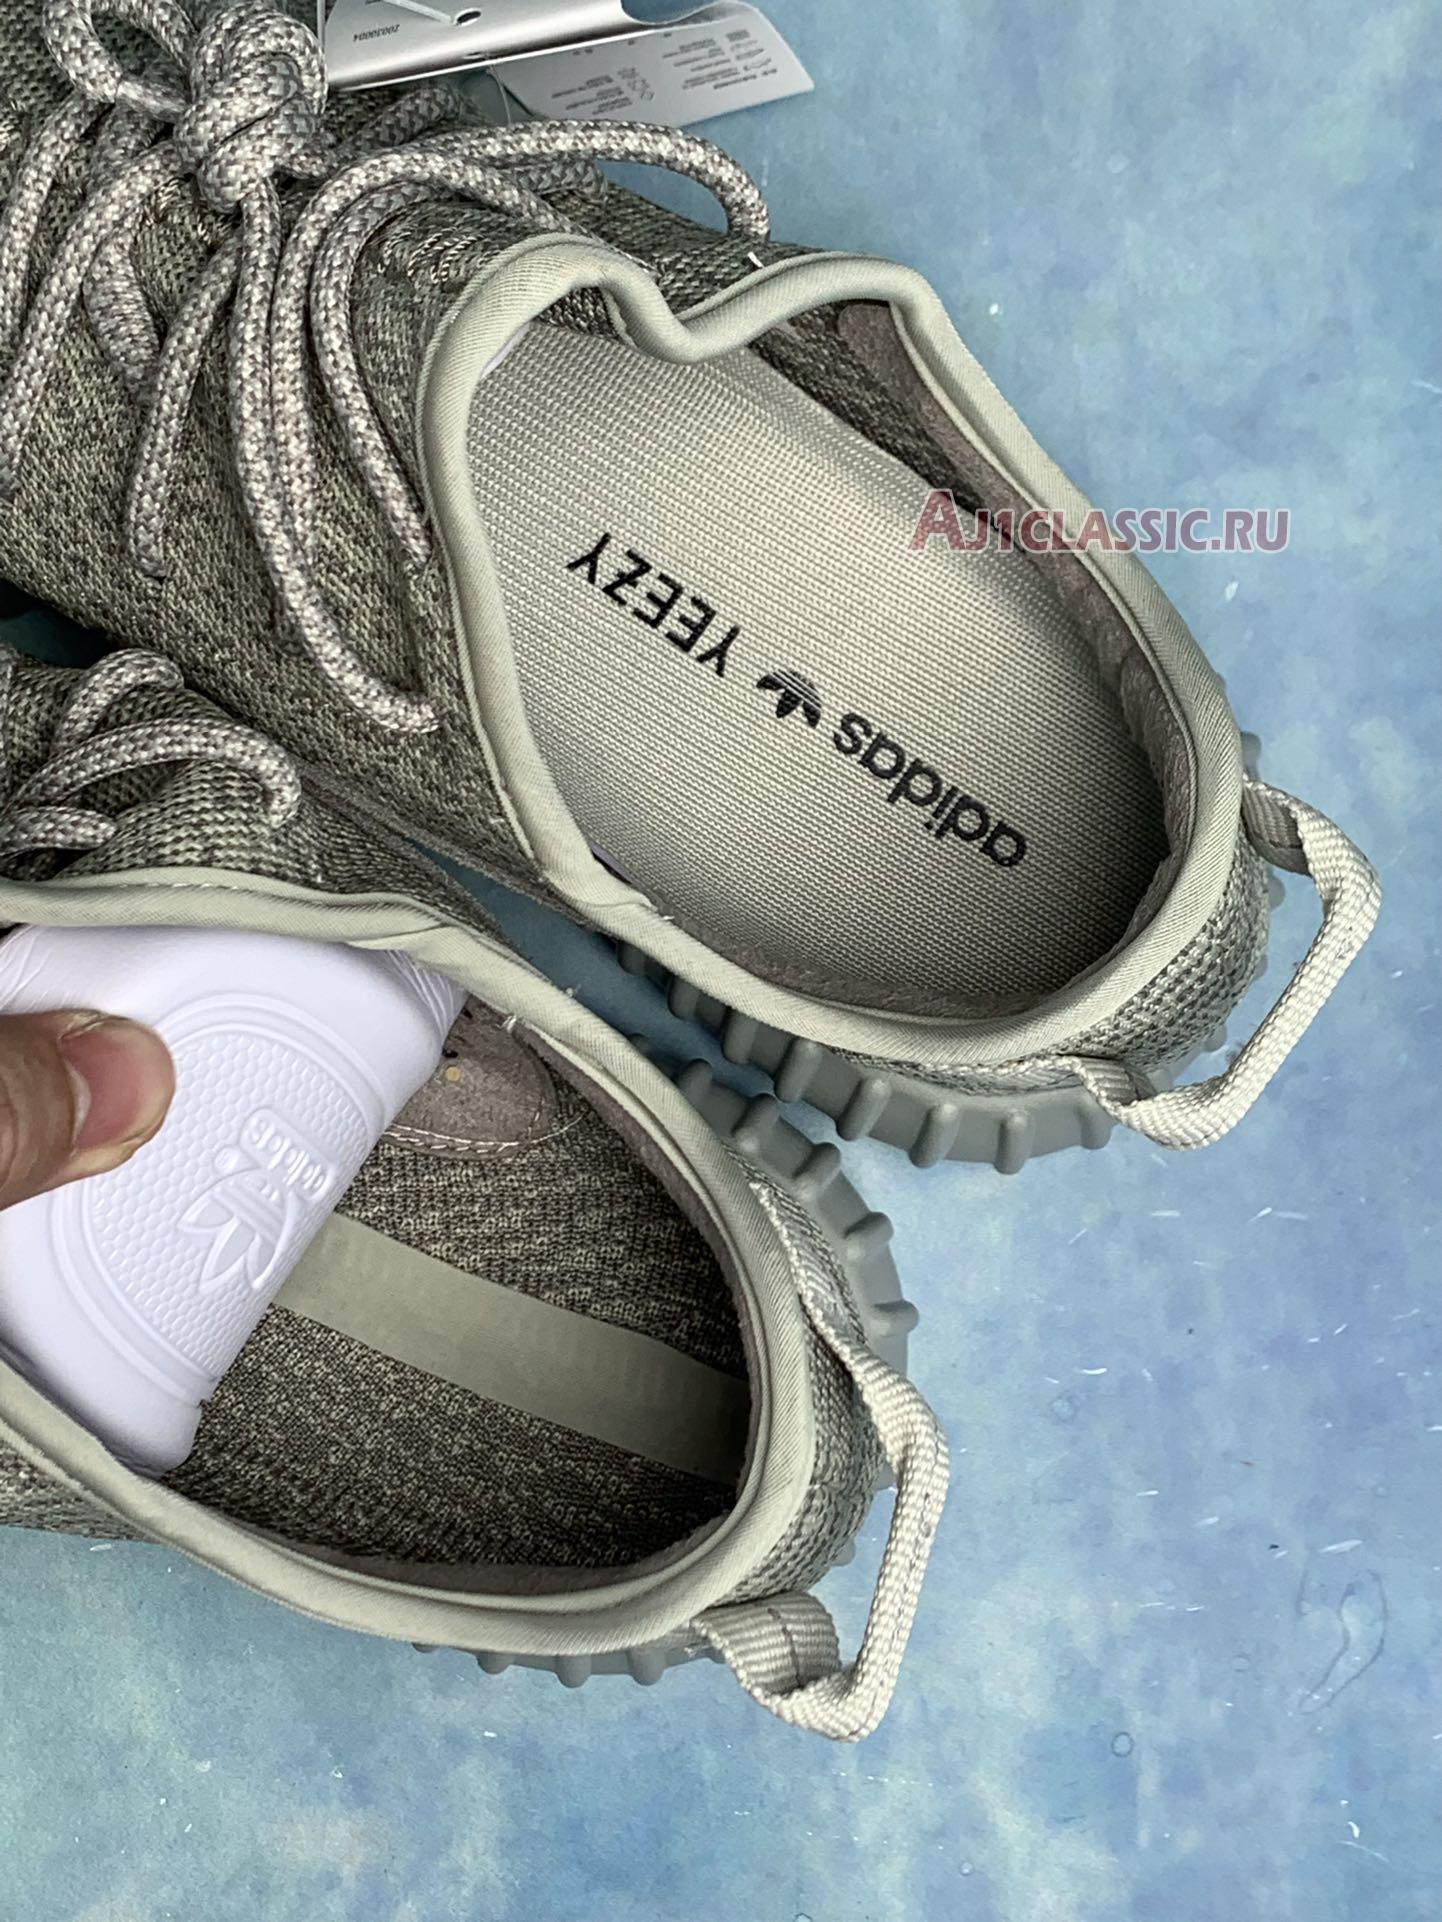 Adidas Yeezy Boost 350 "Moonrock" AQ2660